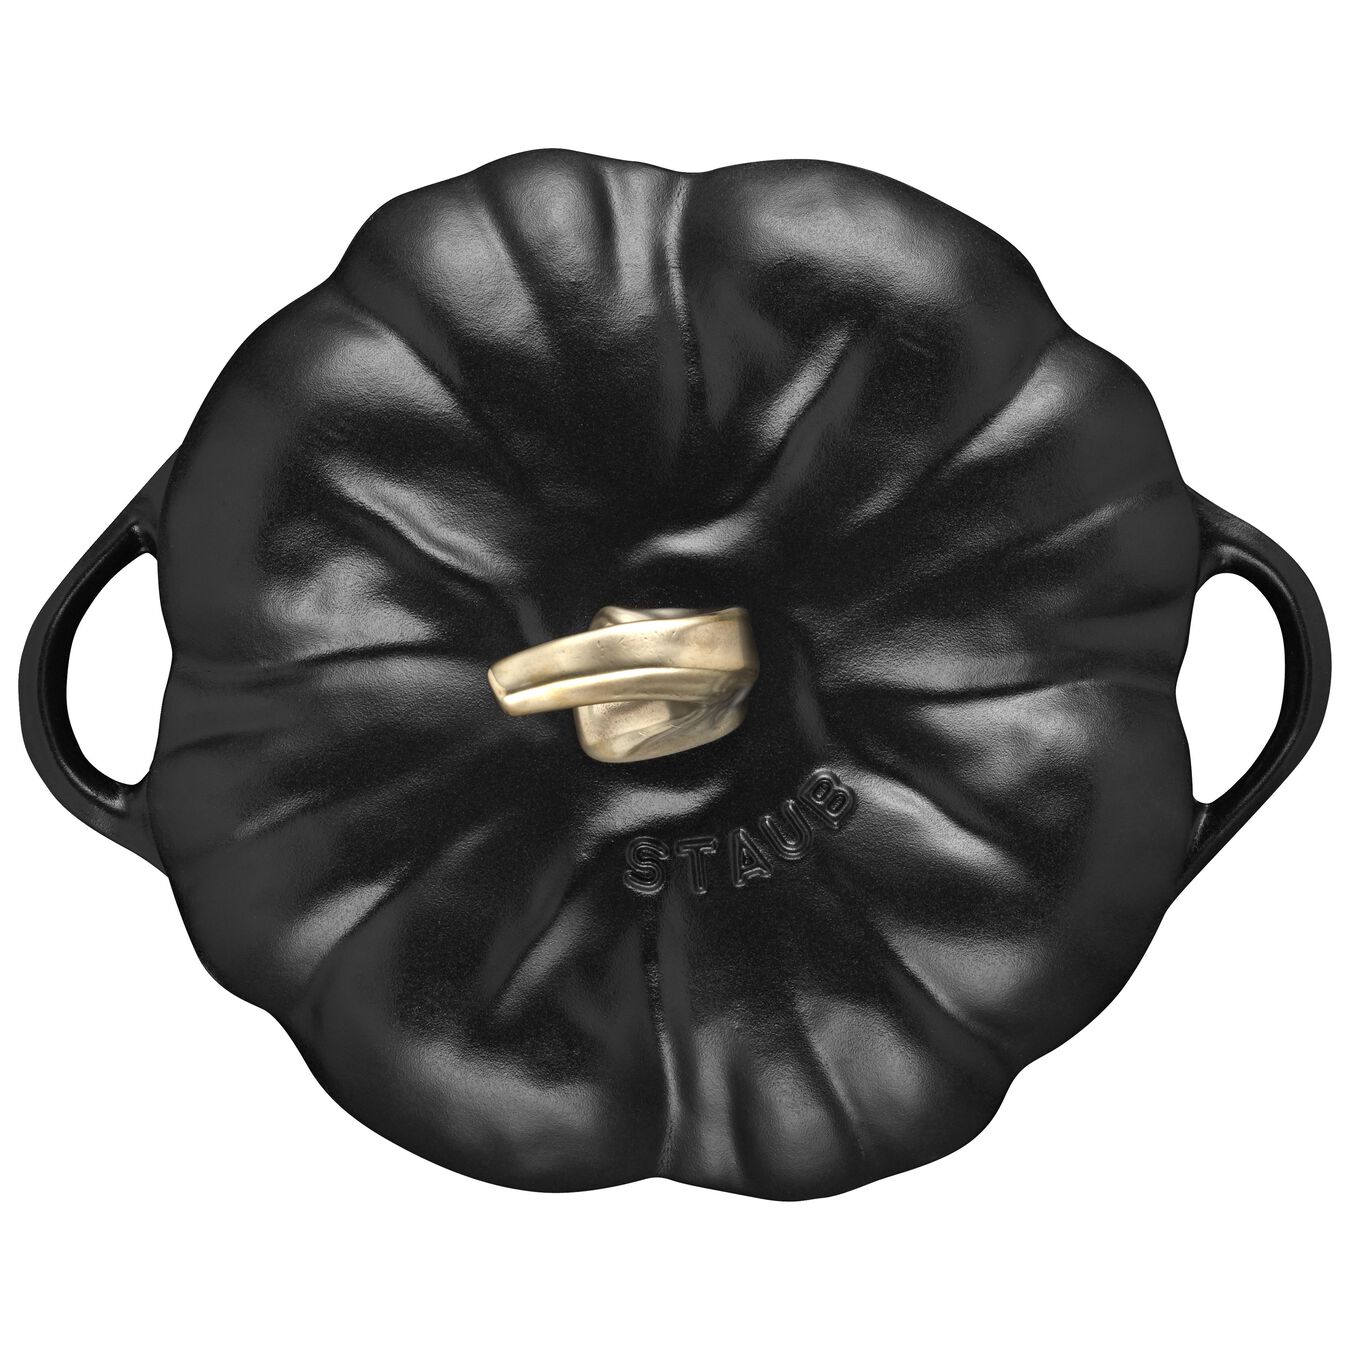 3.5 l cast iron pumpkin Cocotte, black,,large 3